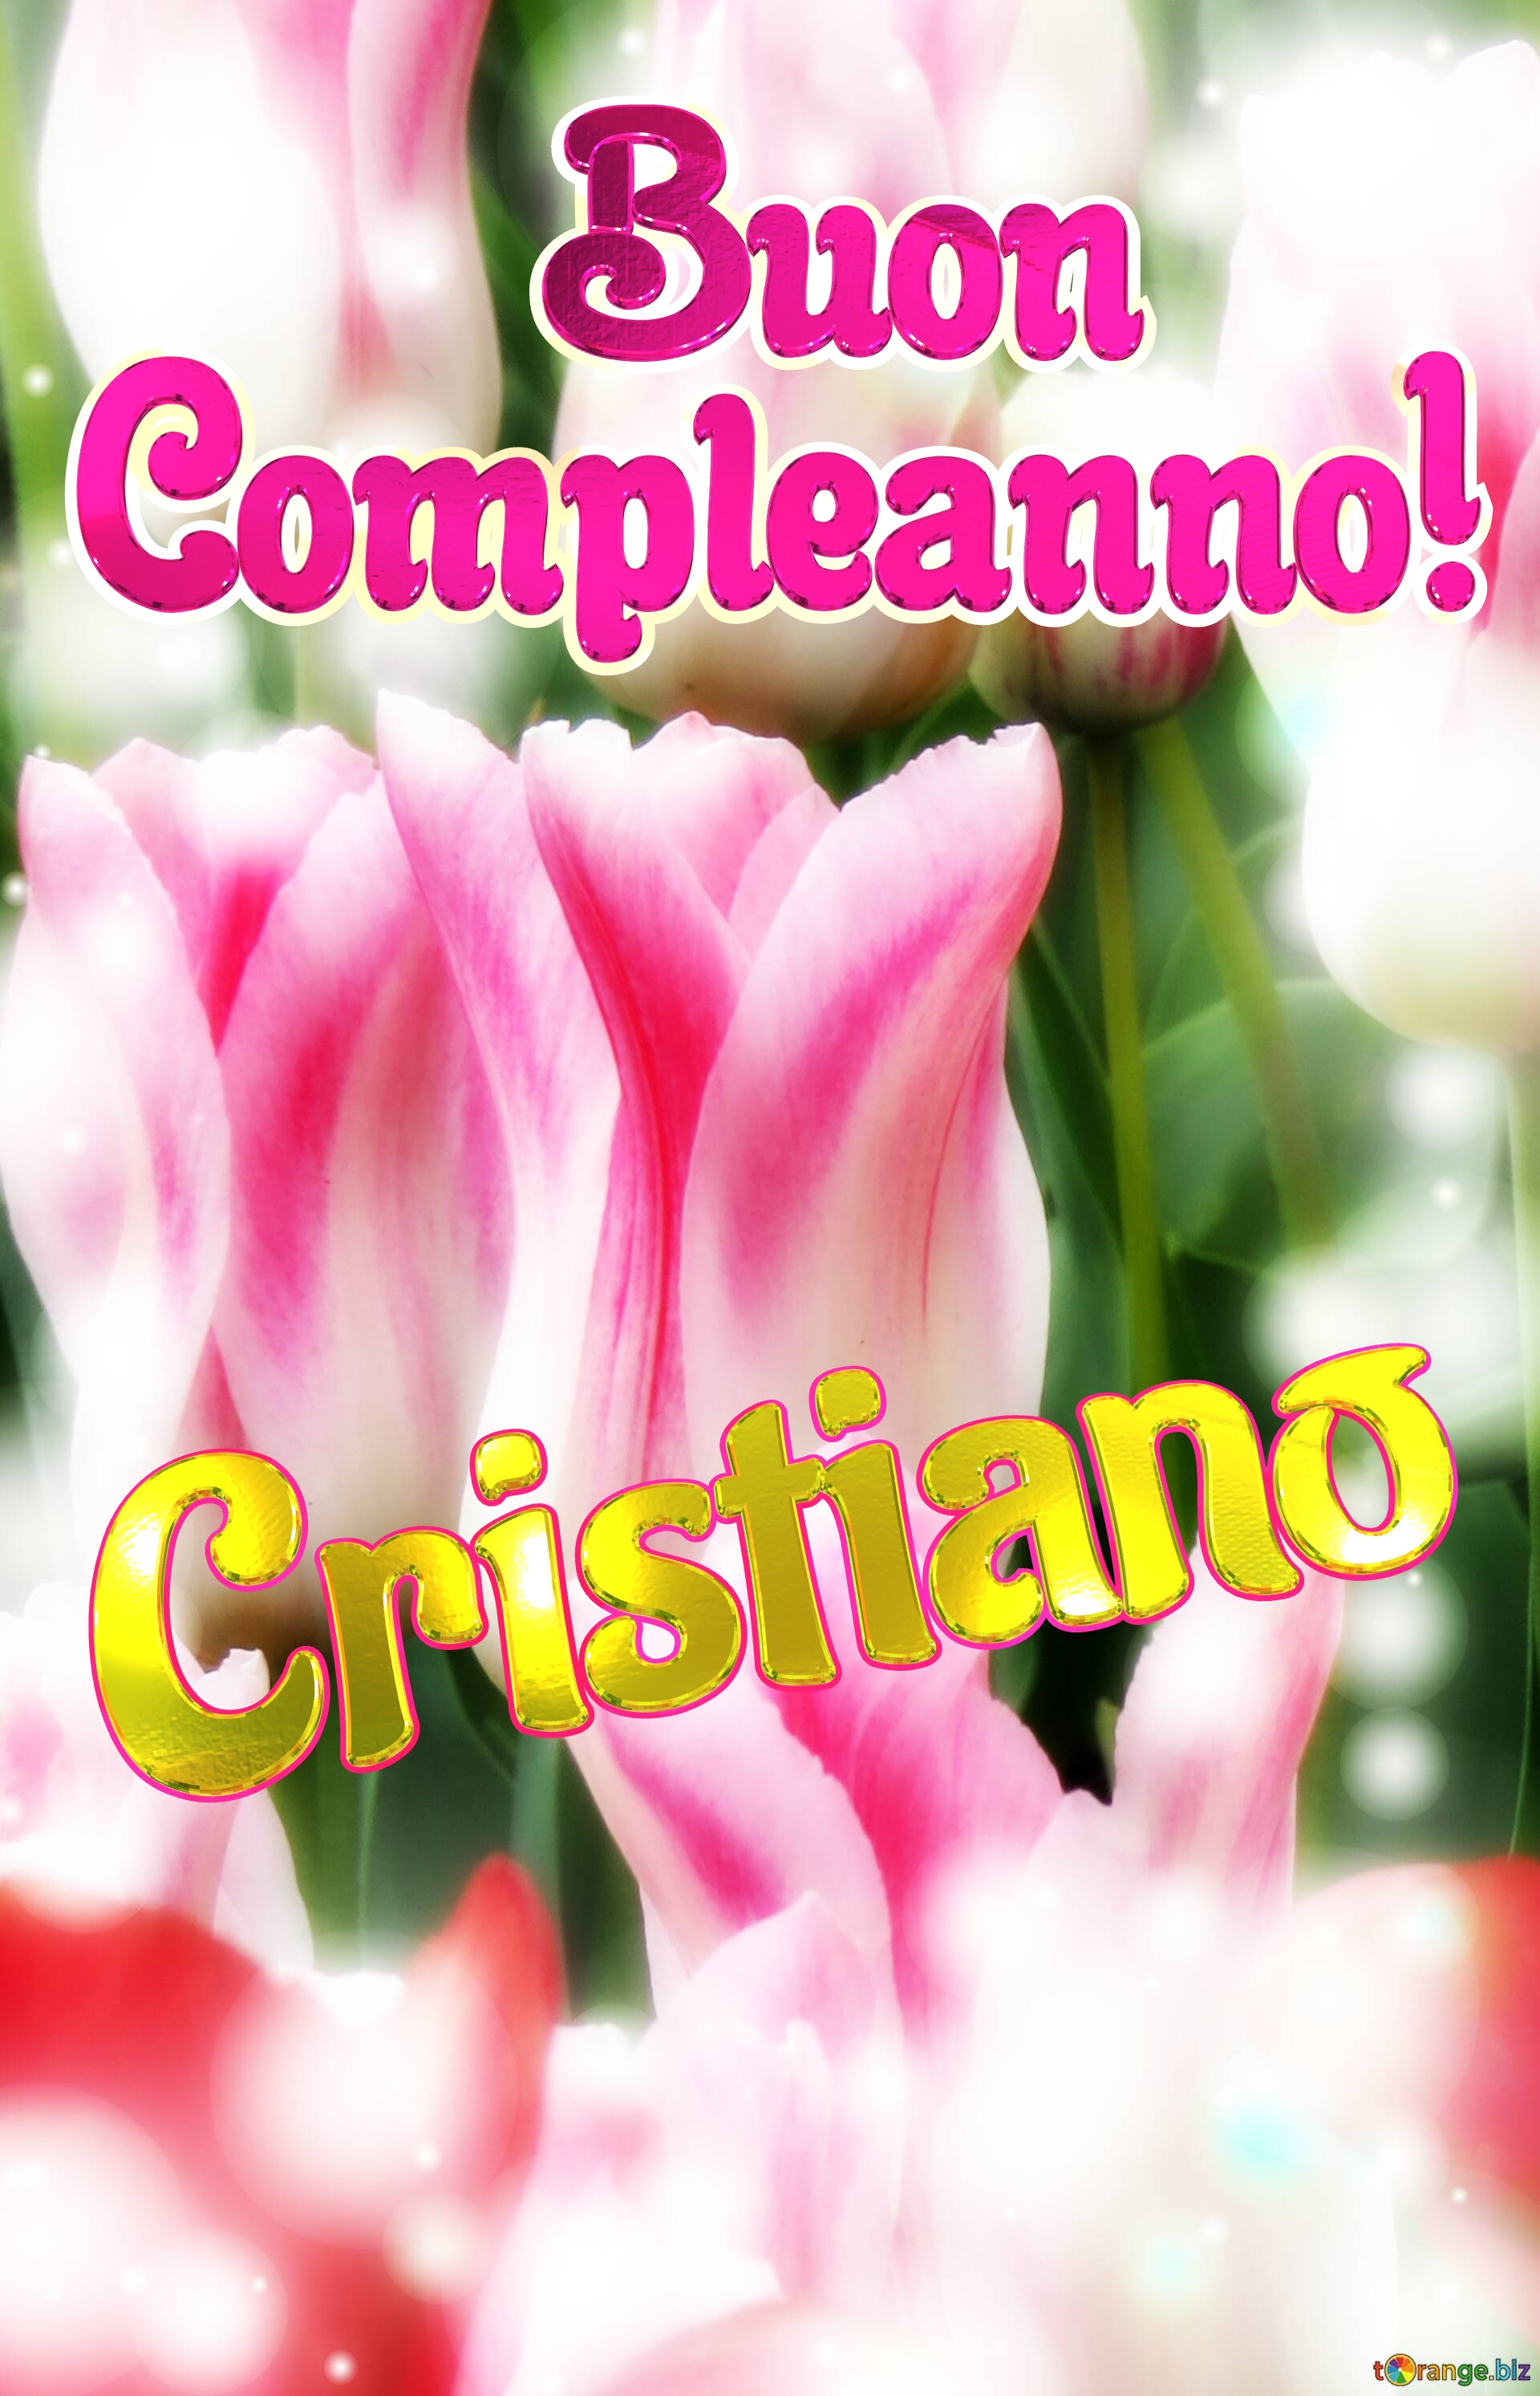       Buon  Compleanno! Cristiano  Che questi tulipani ti portino la forza e il coraggio per affrontare ogni giorno della tua vita. №0